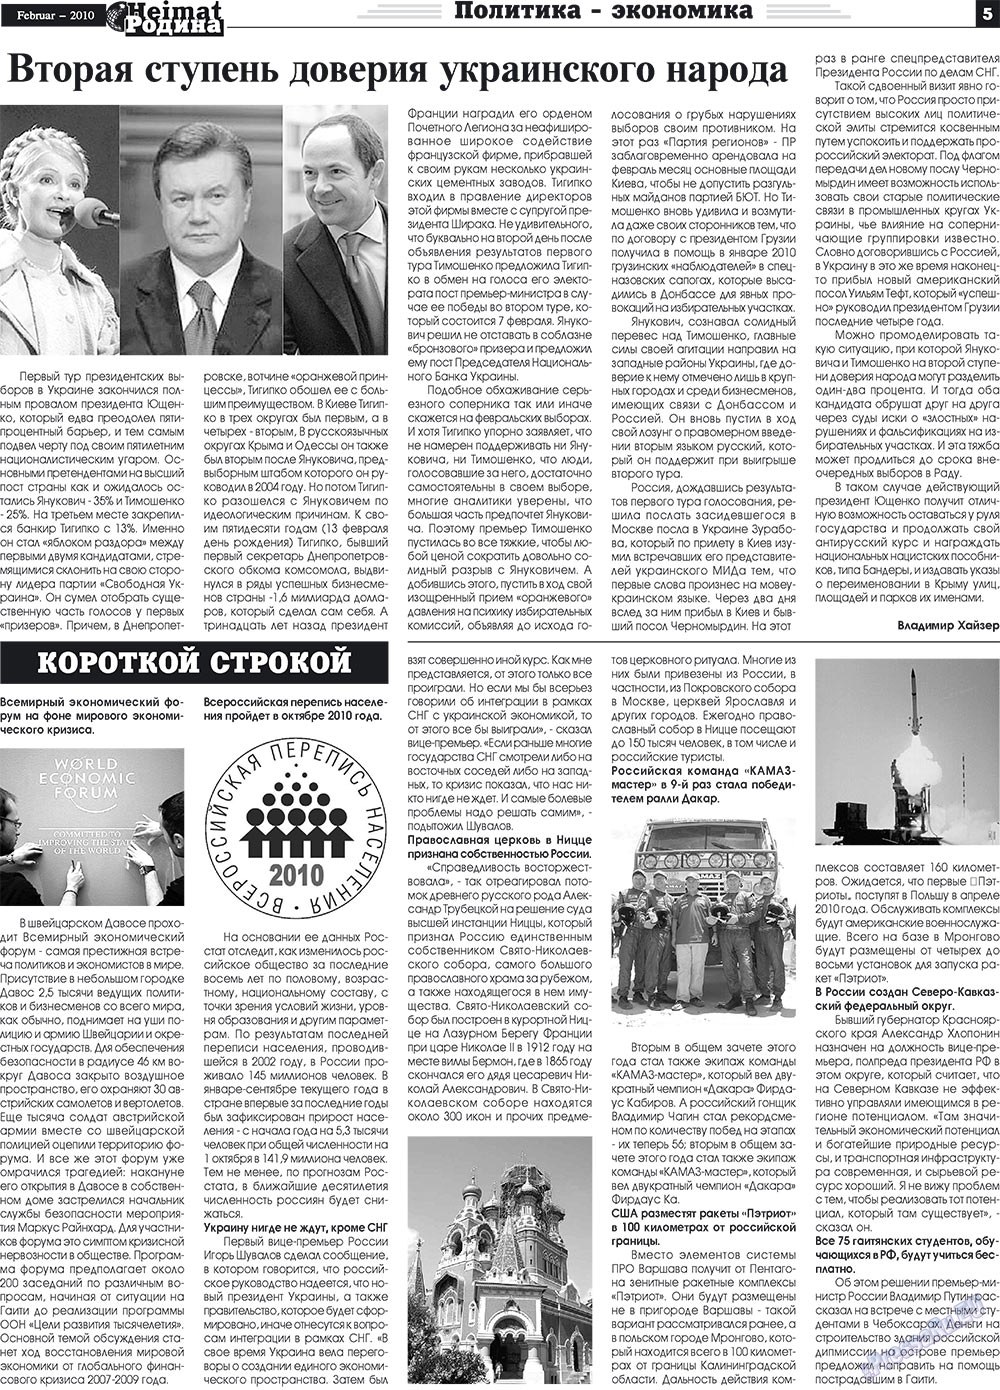 Heimat-Родина (газета). 2010 год, номер 2, стр. 5